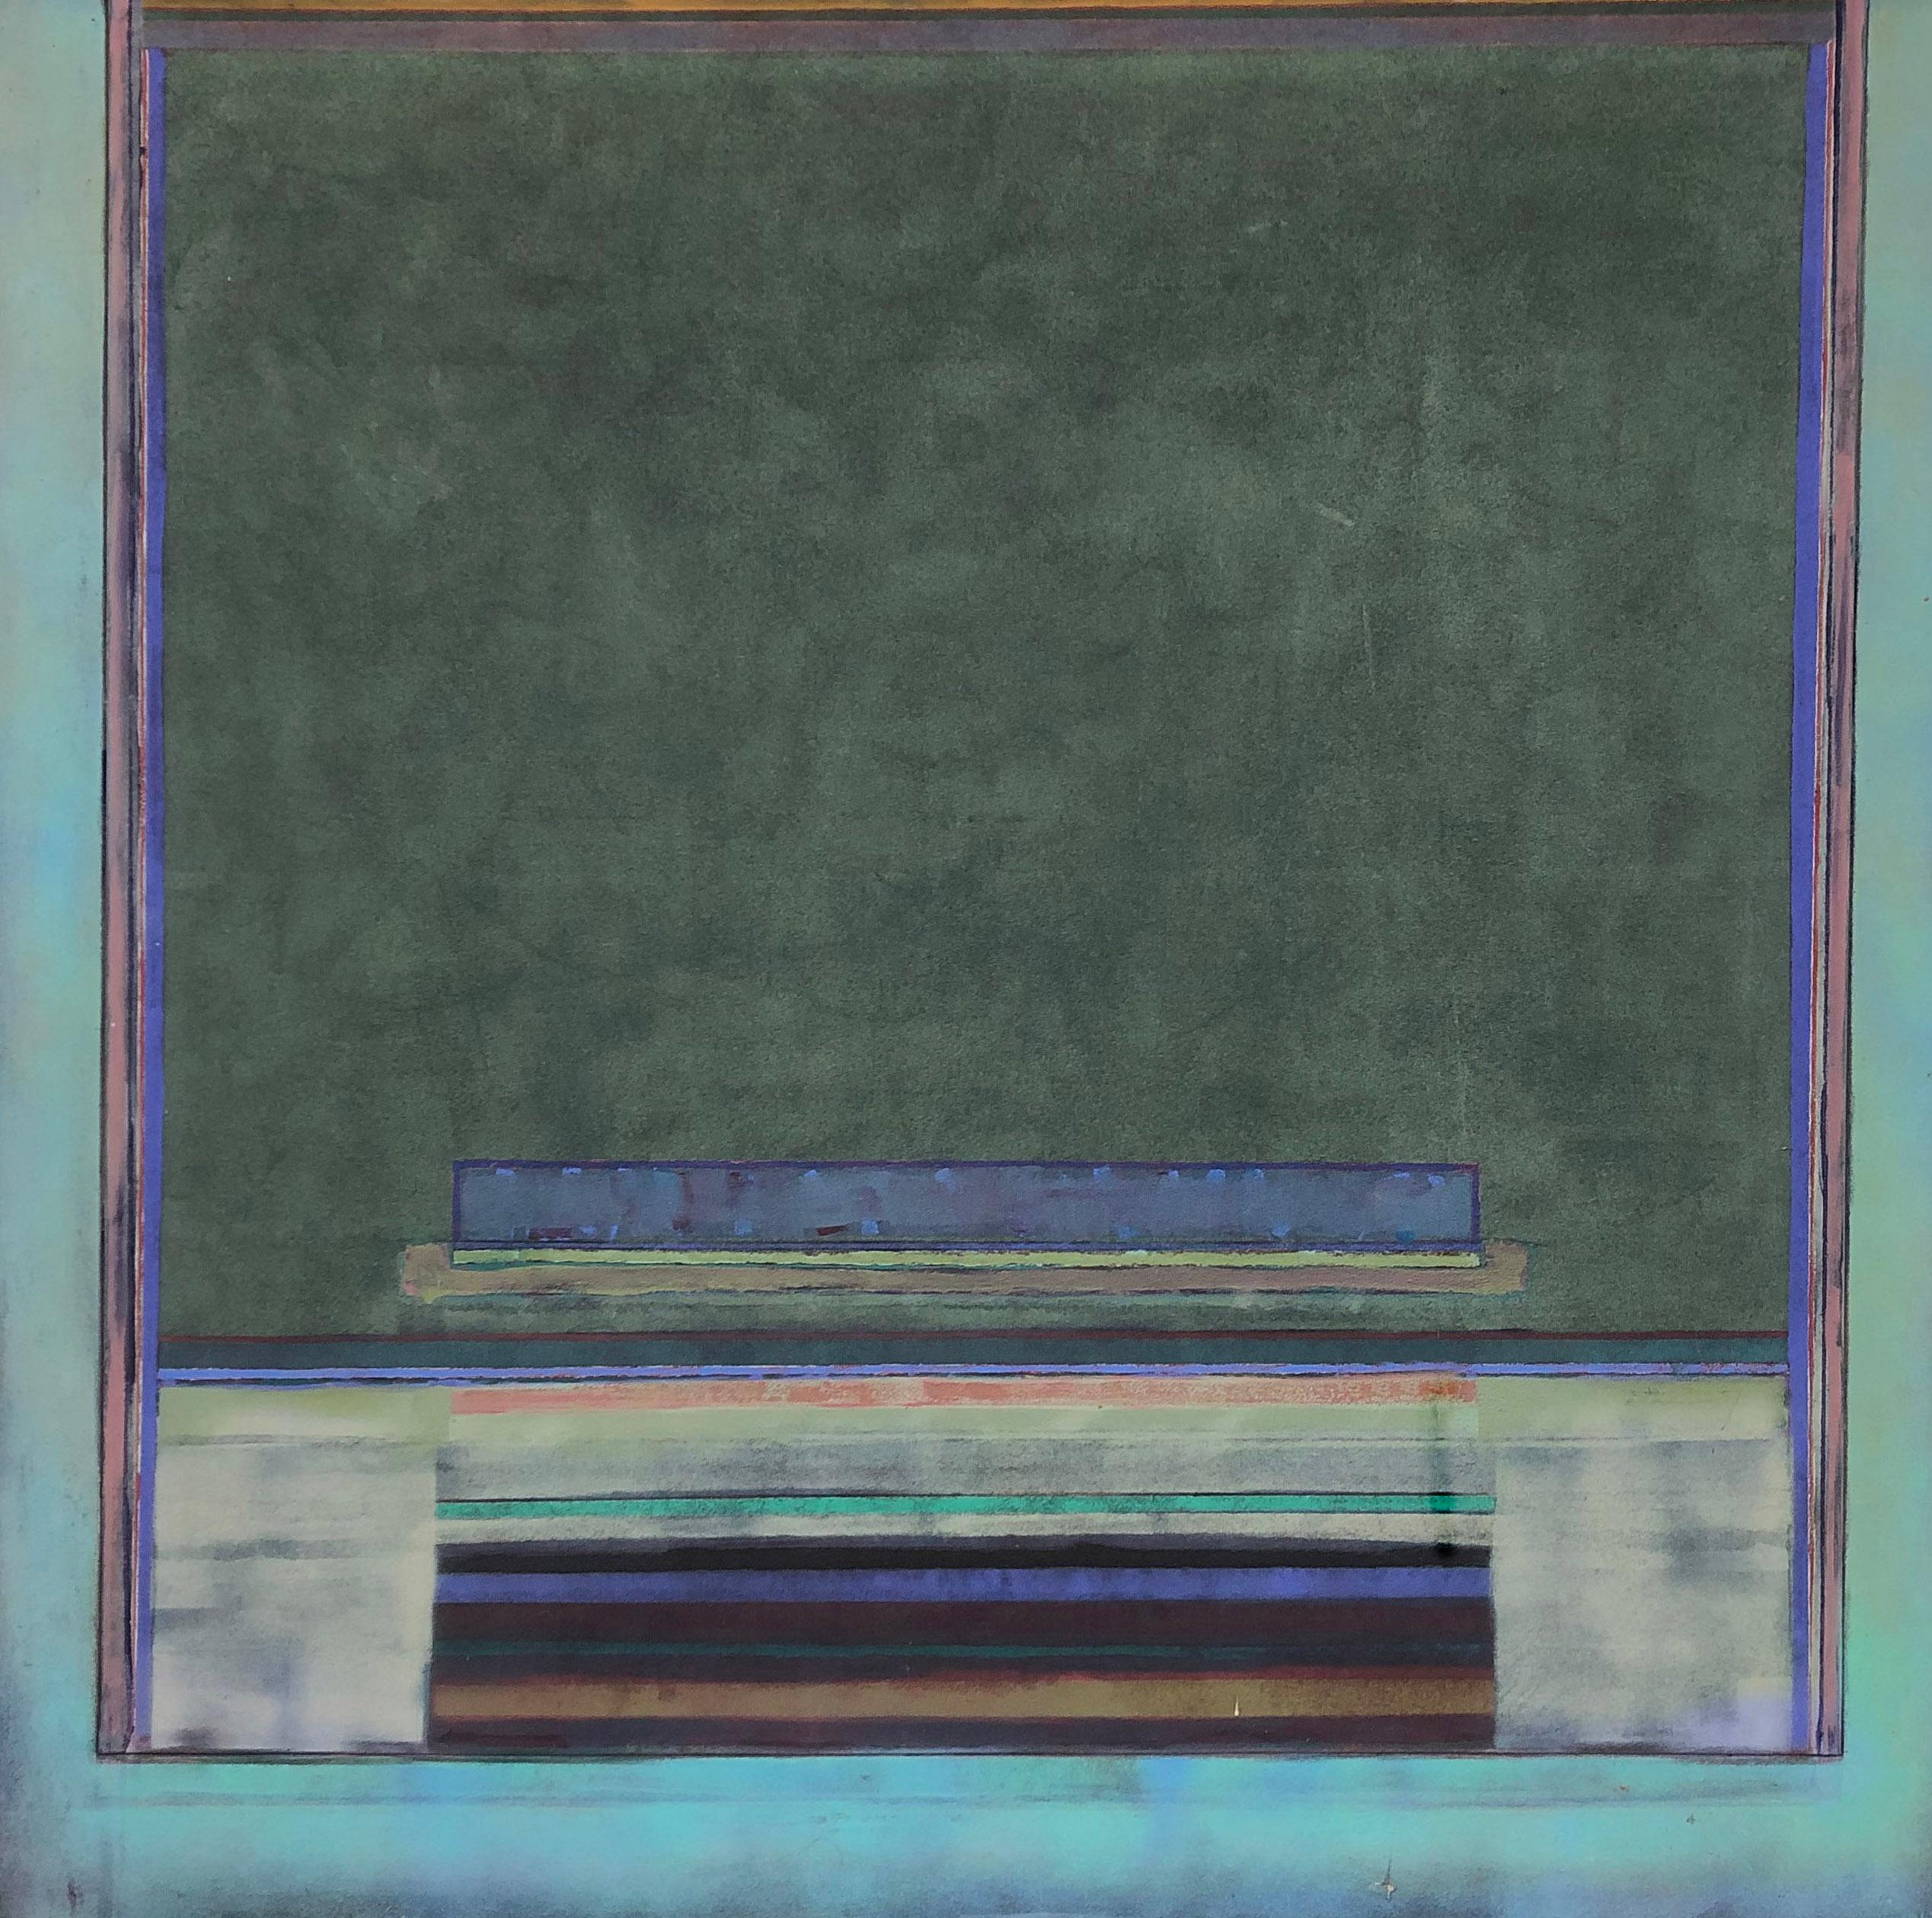 Ein modernes, geometrisch abstraktes Gemälde des amerikanischen Künstlers Richard Huntington aus der Mitte des letzten Jahrhunderts.

Richard Huntington (geb. 1936) ist ein amerikanischer Maler, Grafiker und Schriftsteller. Er ist emeritierter